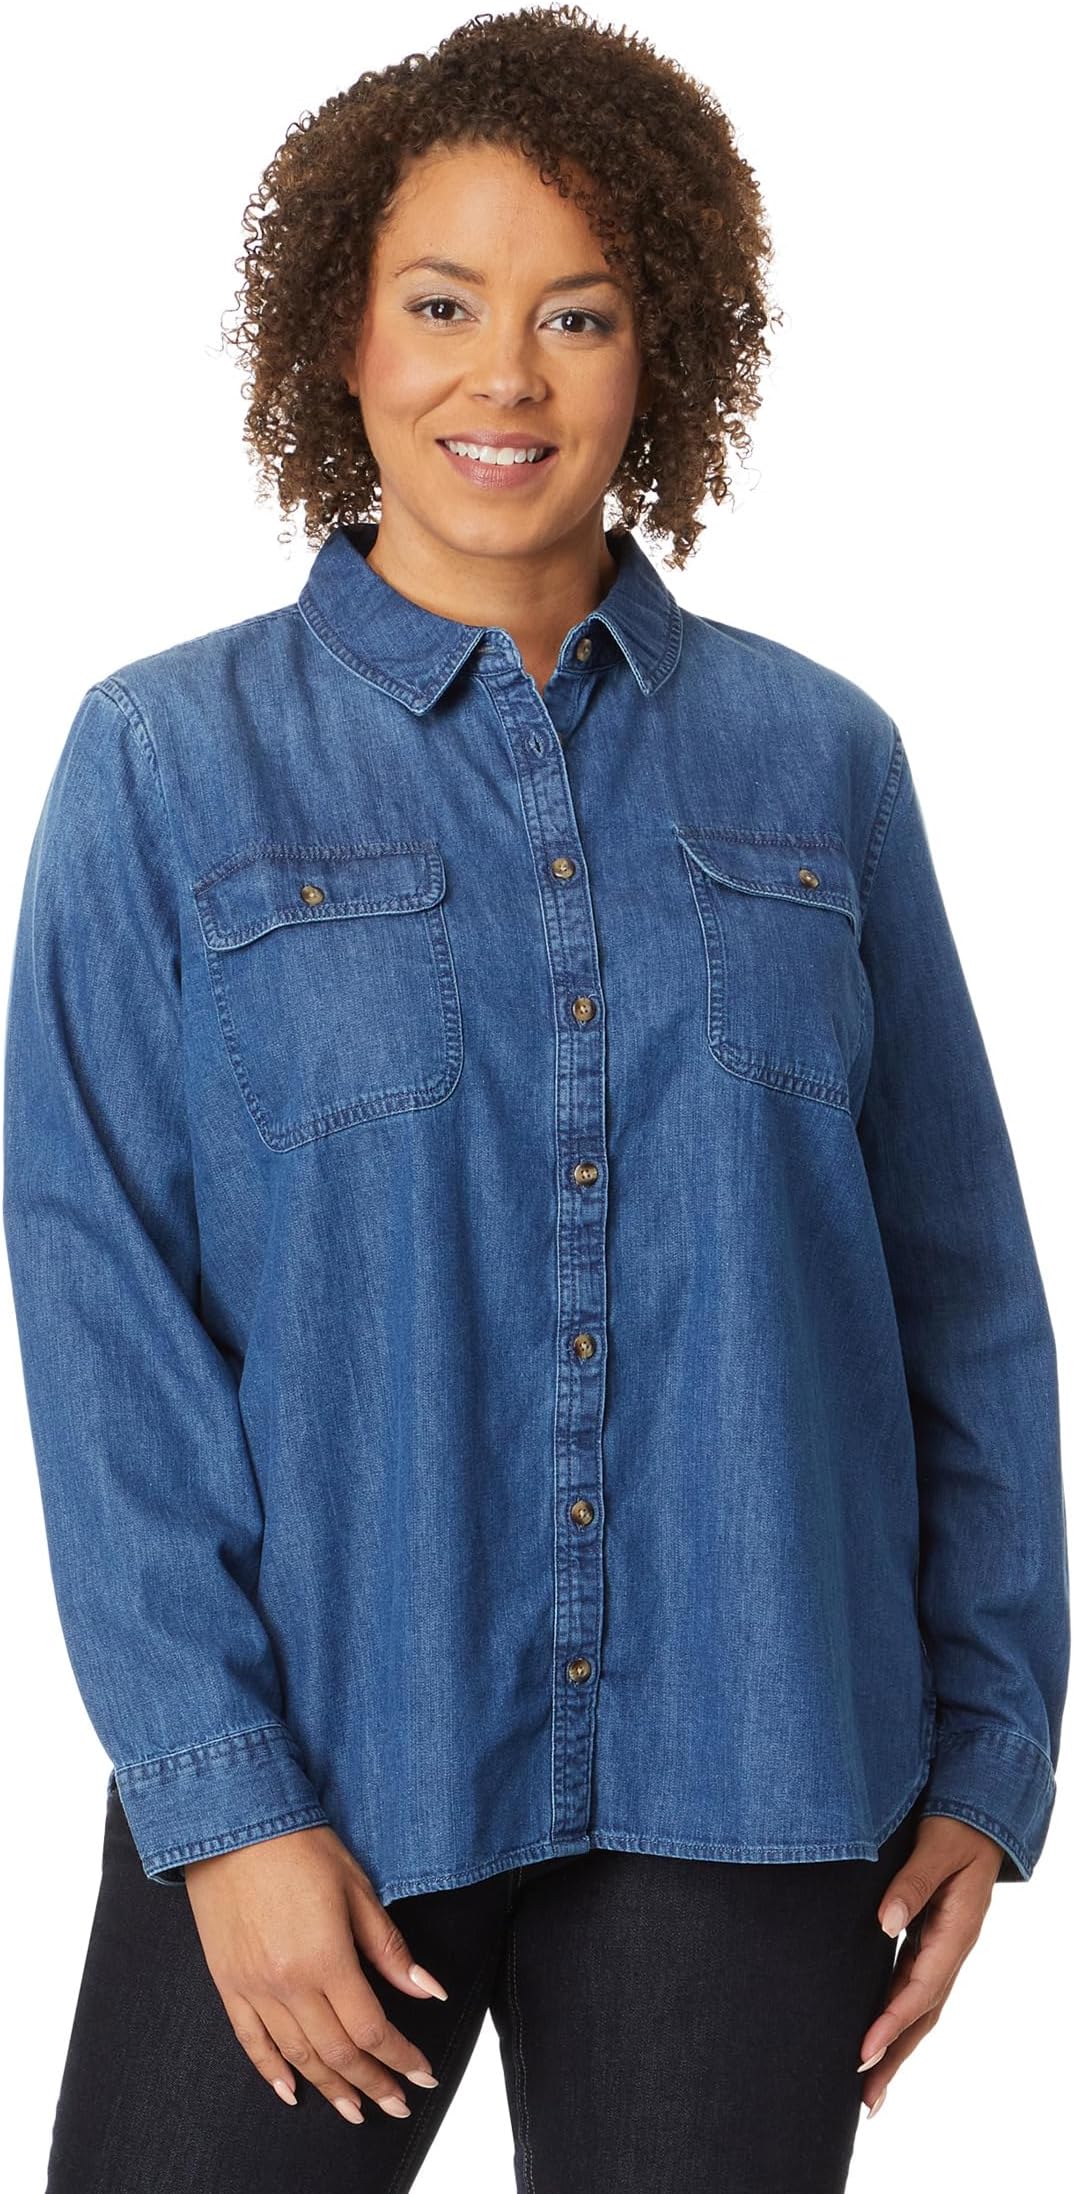 Джинсовая рубашка больших размеров с длинным рукавом L.L.Bean, цвет Medium Indigo